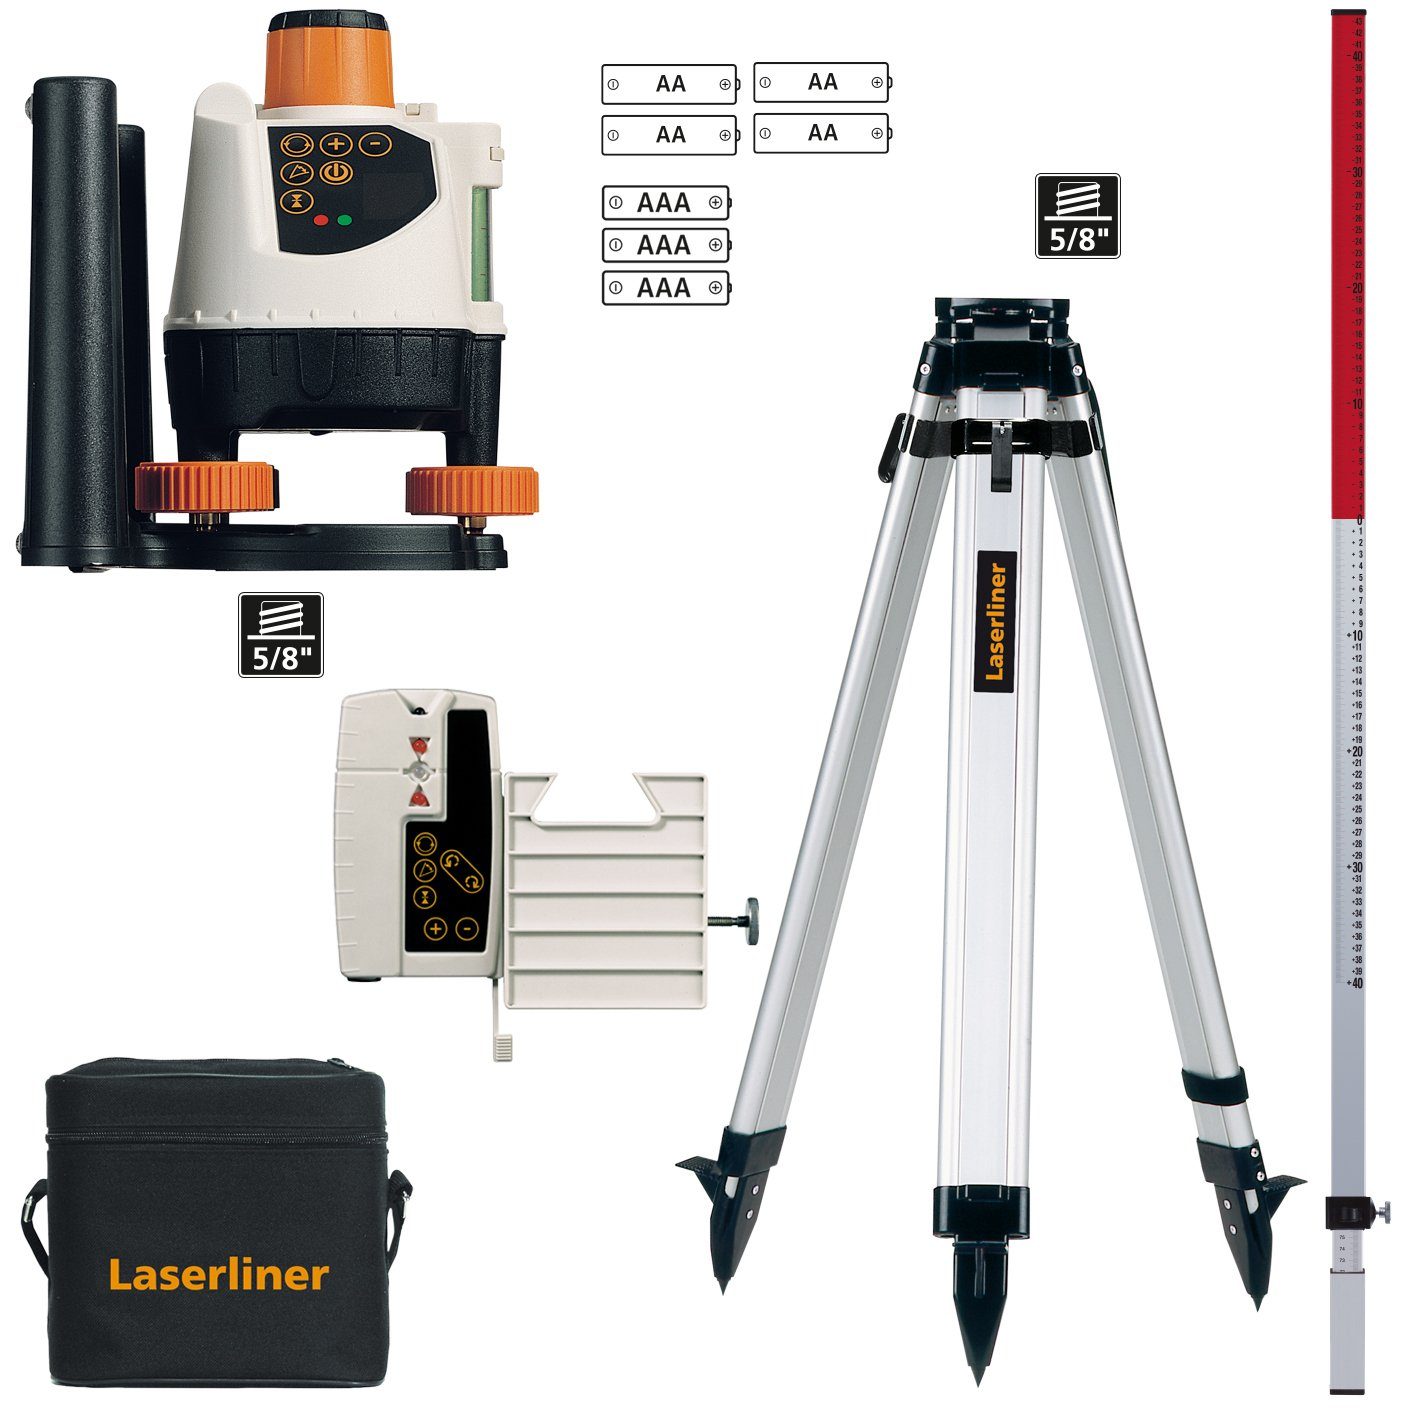 LASERLINER Rotationslaser Umarex Hybrid- Rotationslaser u Laserliner 120 BeamControl-Master Set